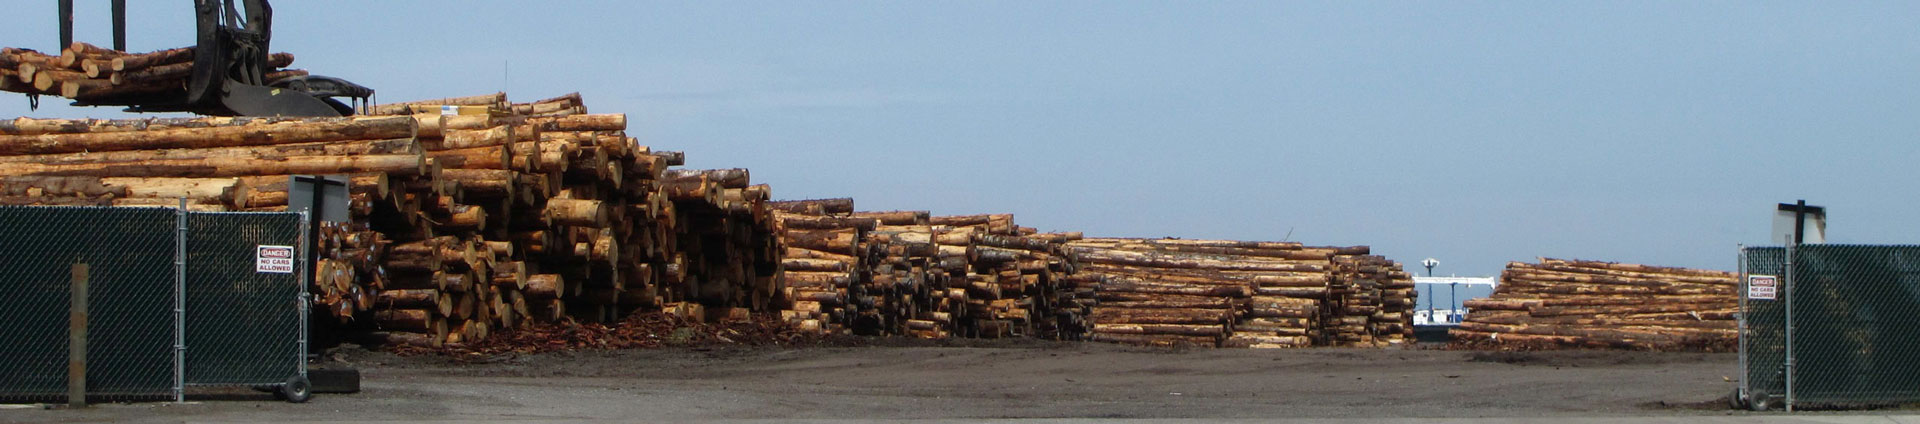 लकड़ी के व्यवसाय के लिए हेडर छवि